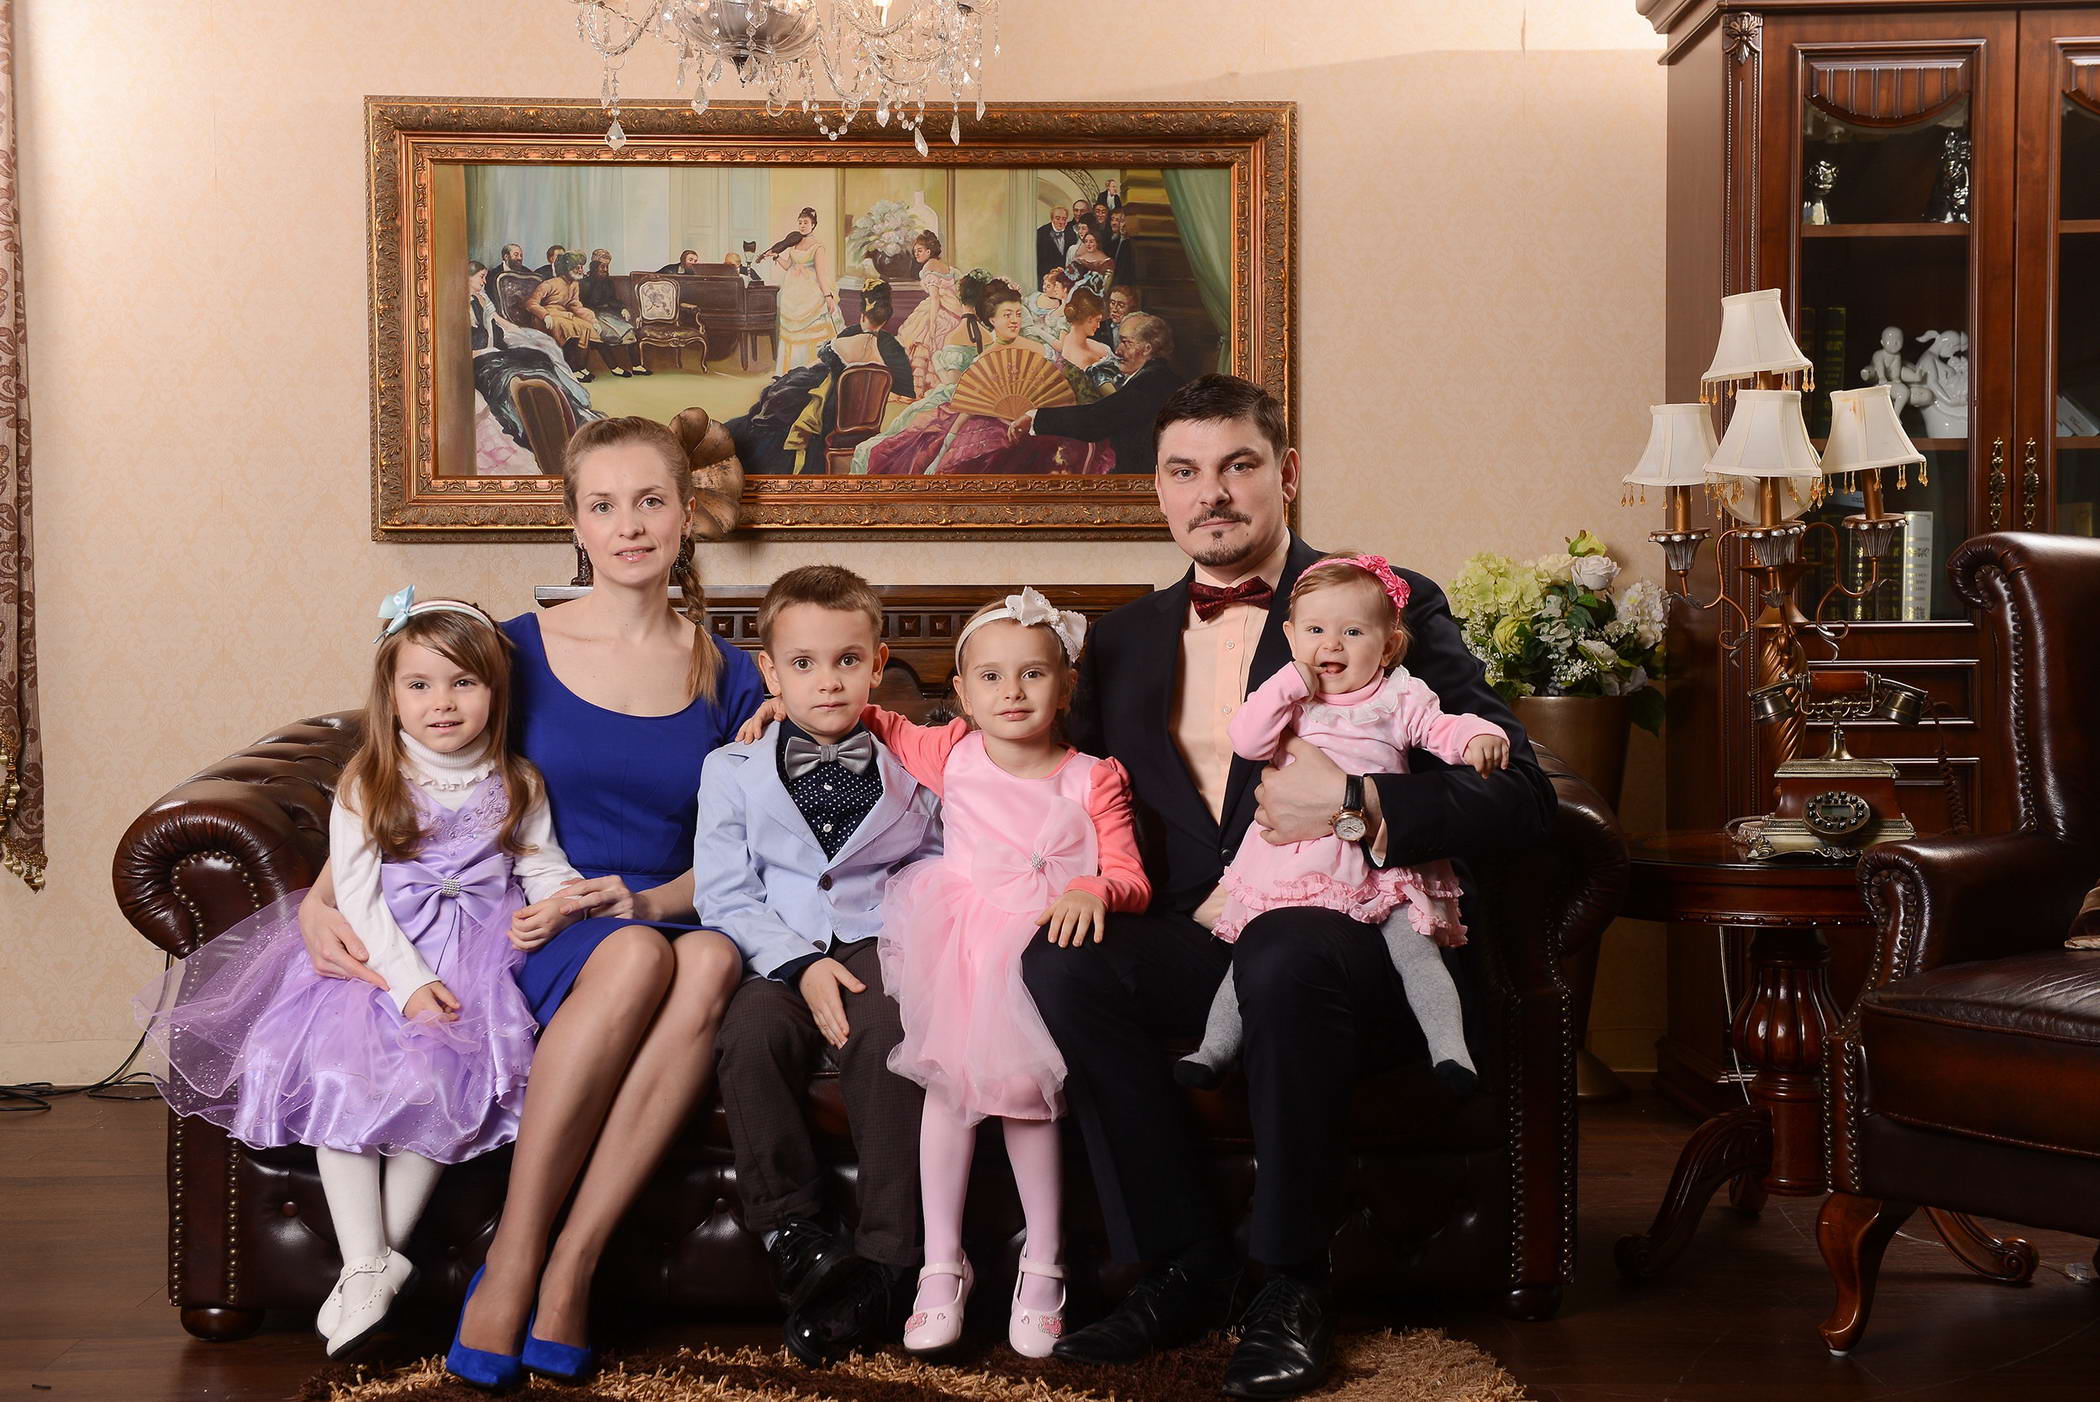 Глафира тарханова биография с мужем и детьми фото семья личная